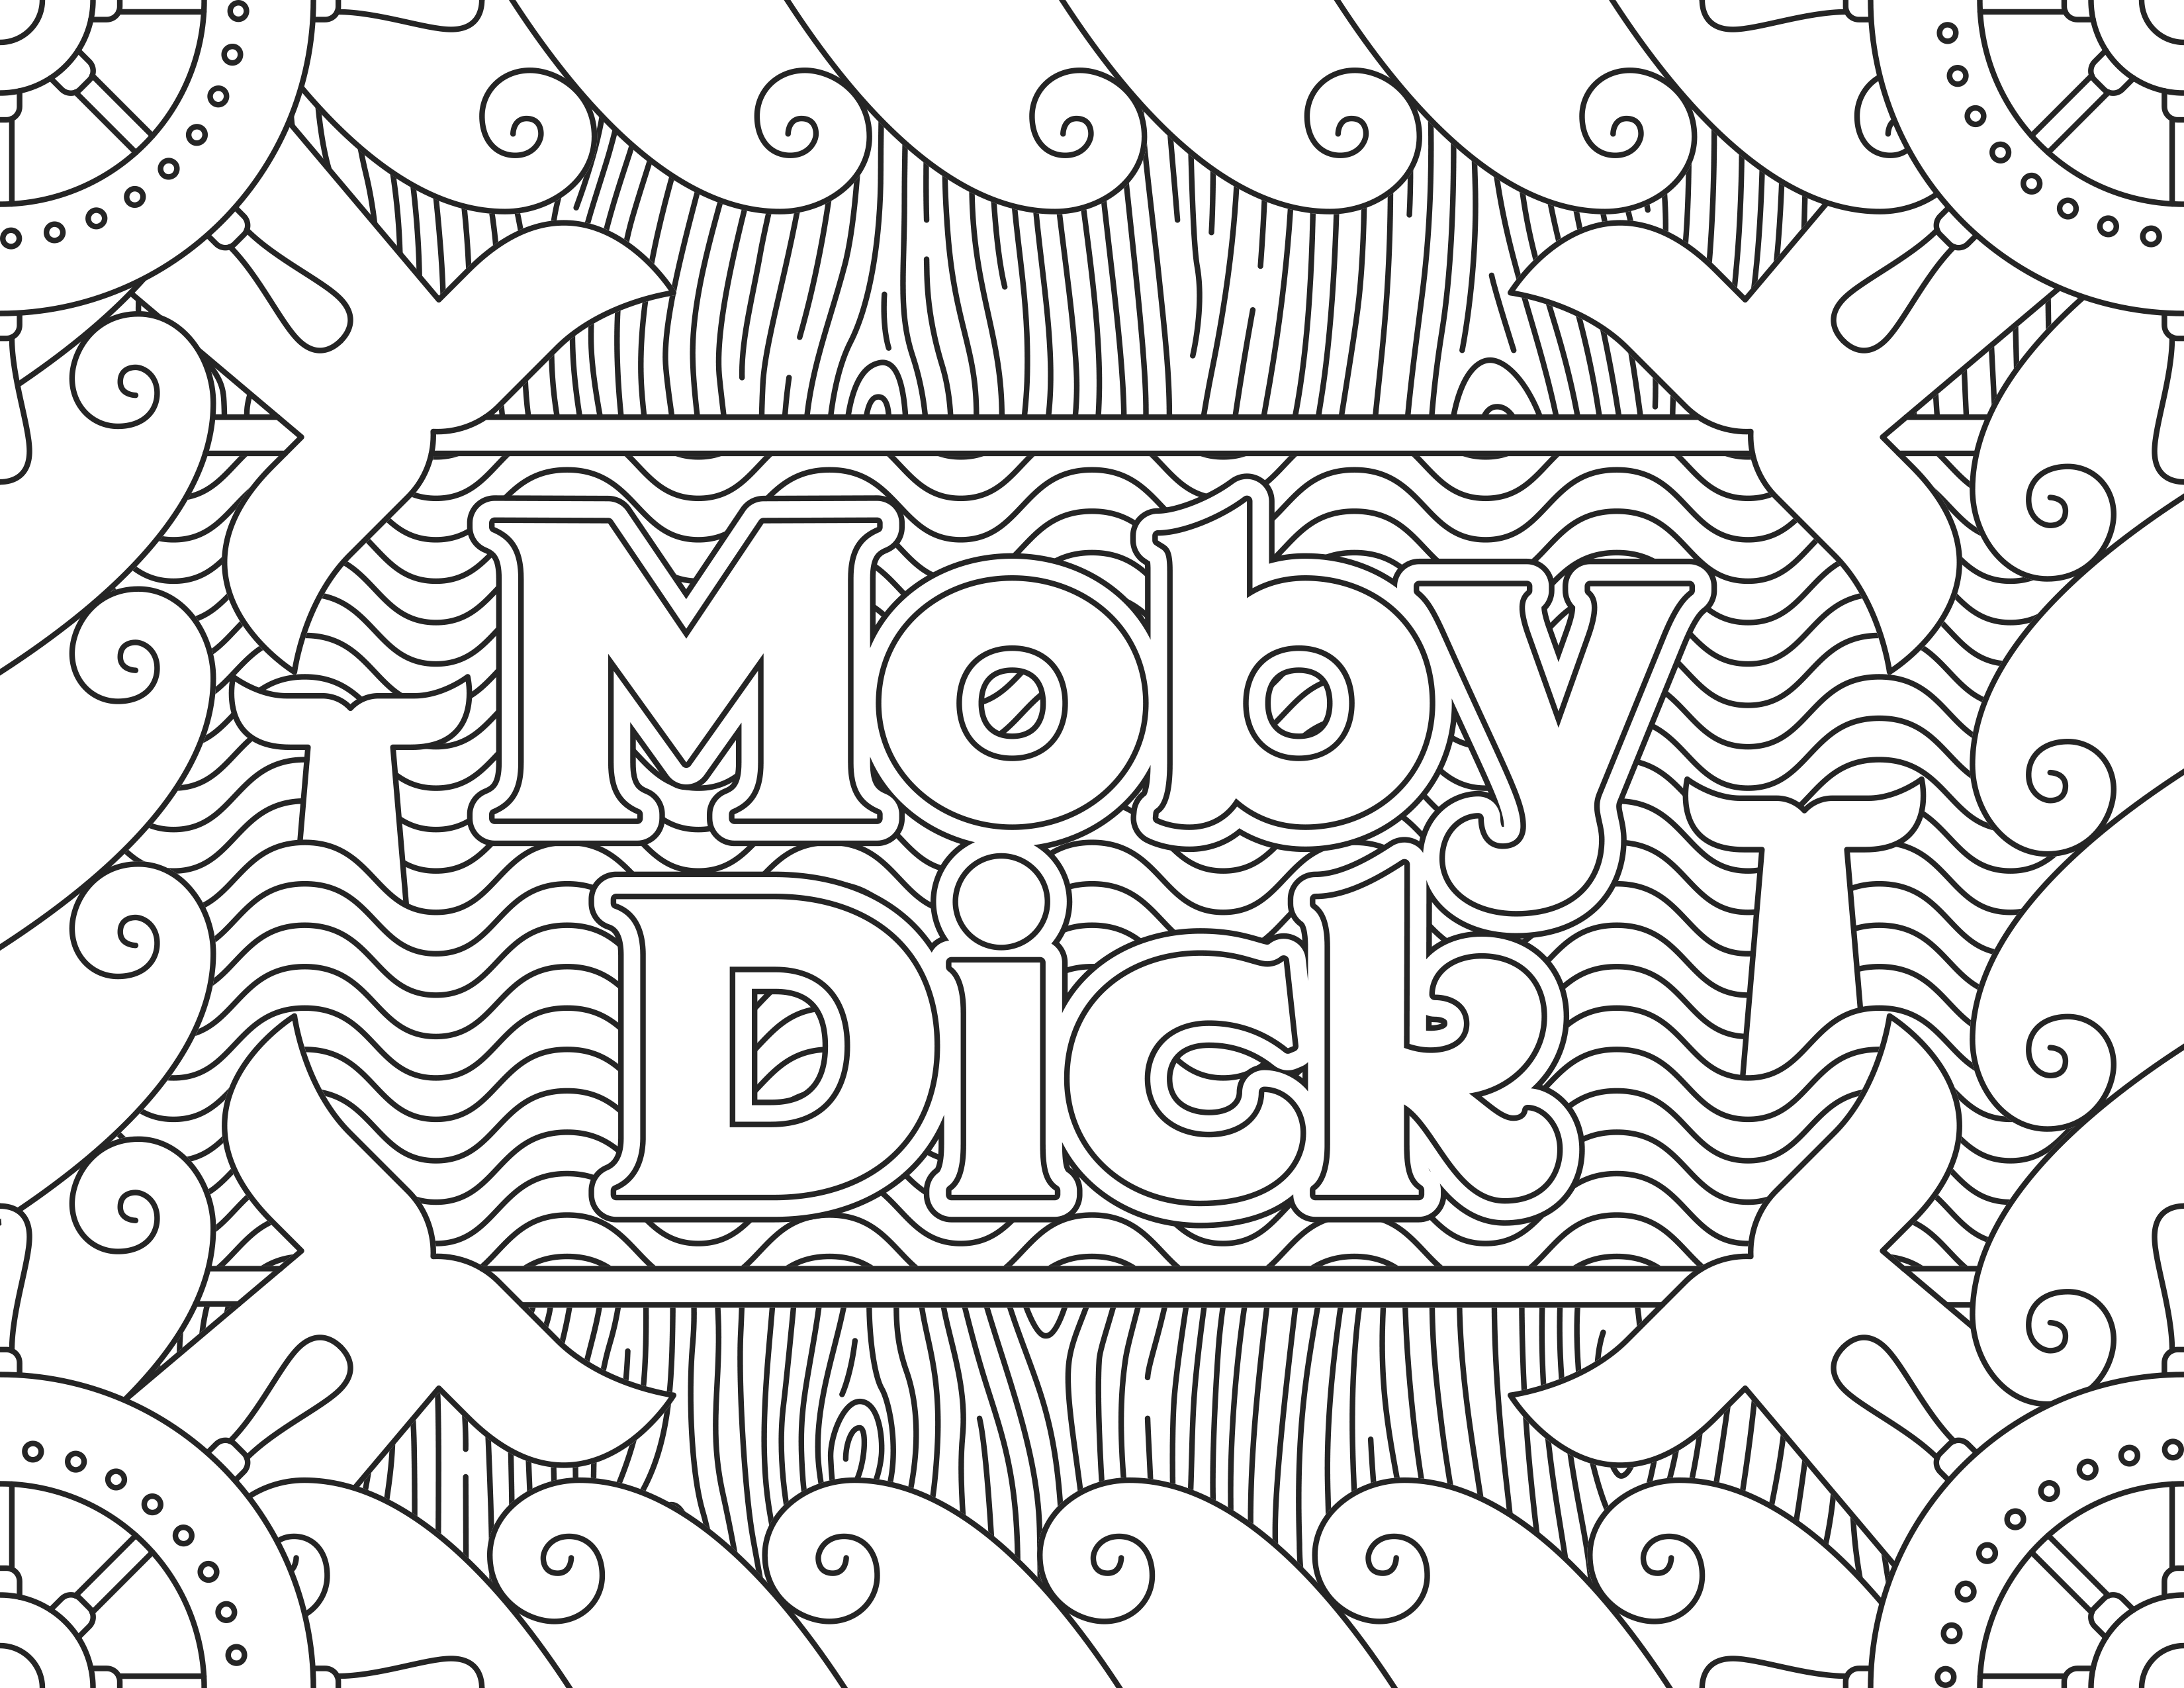 Ausmalbilder inspiriert durch den Film 'Moby Dick